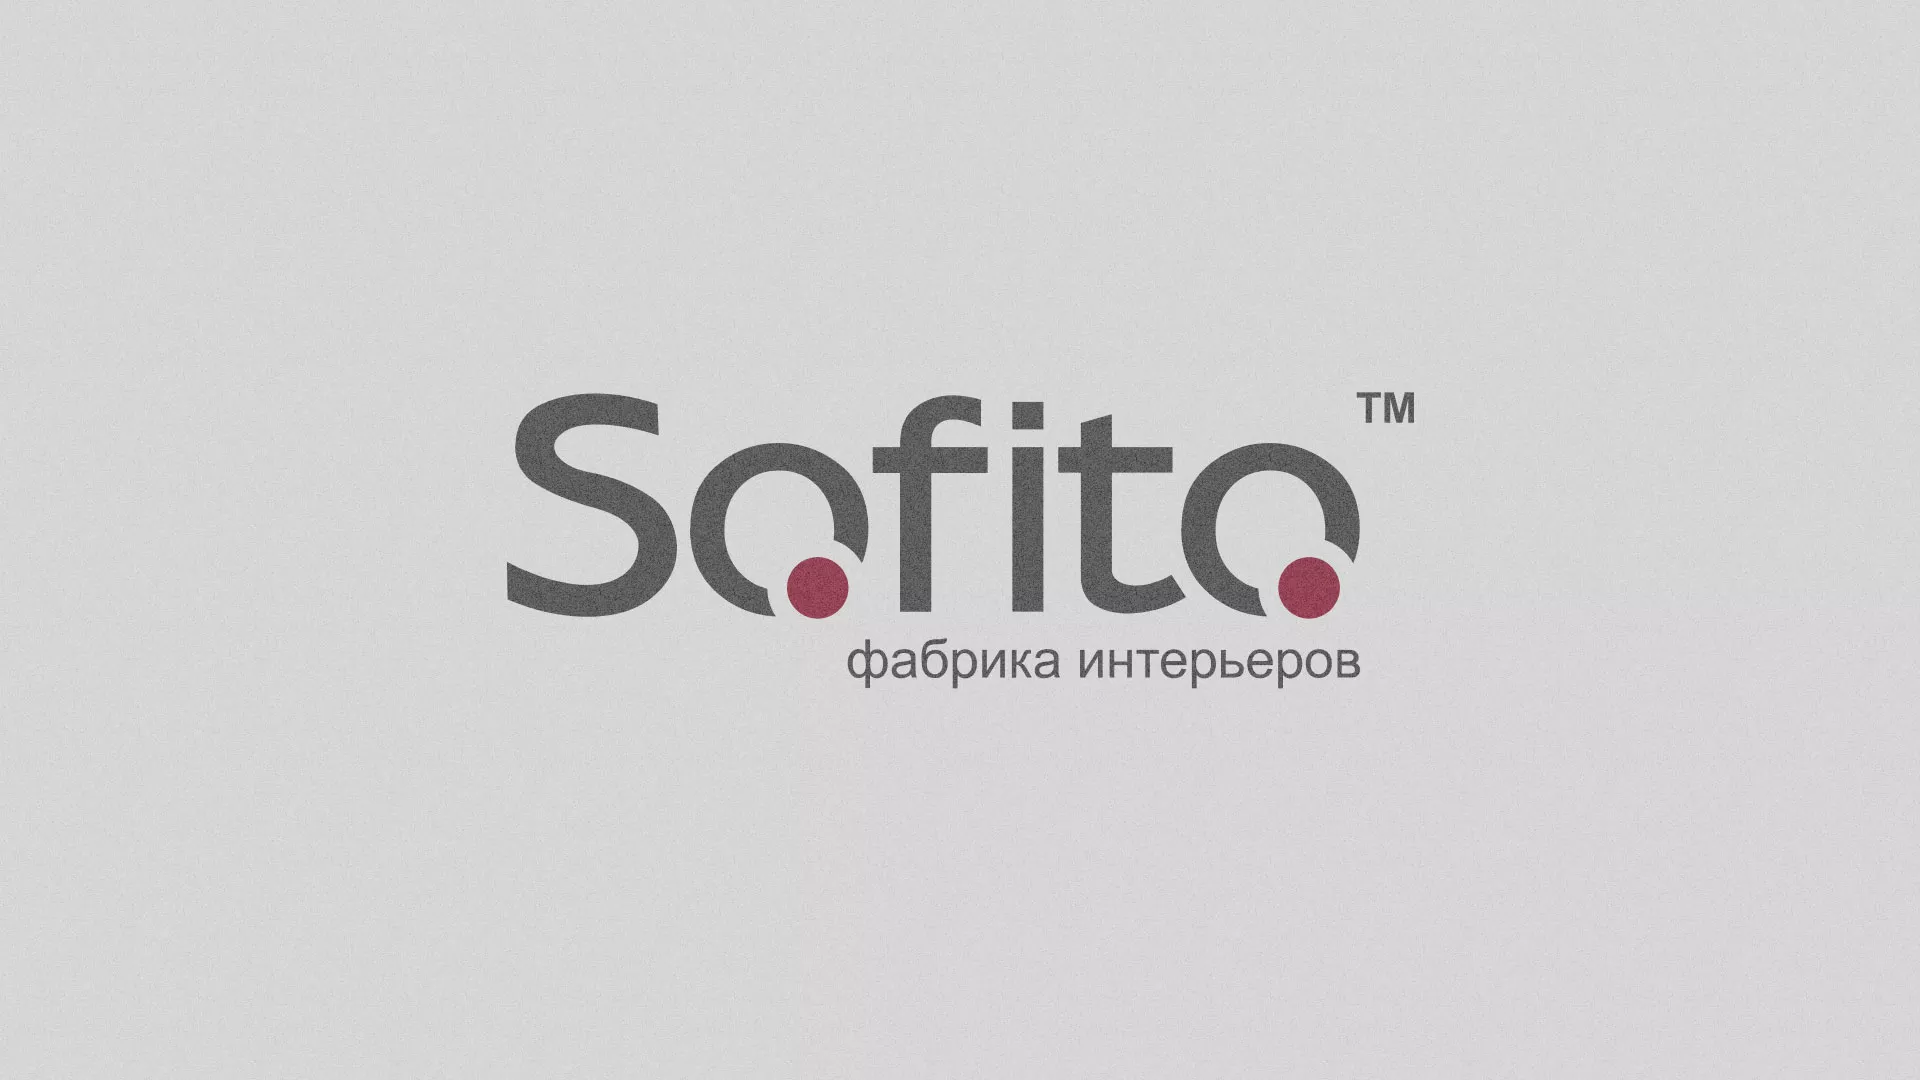 Создание сайта по натяжным потолкам для компании «Софито» в Таганроге